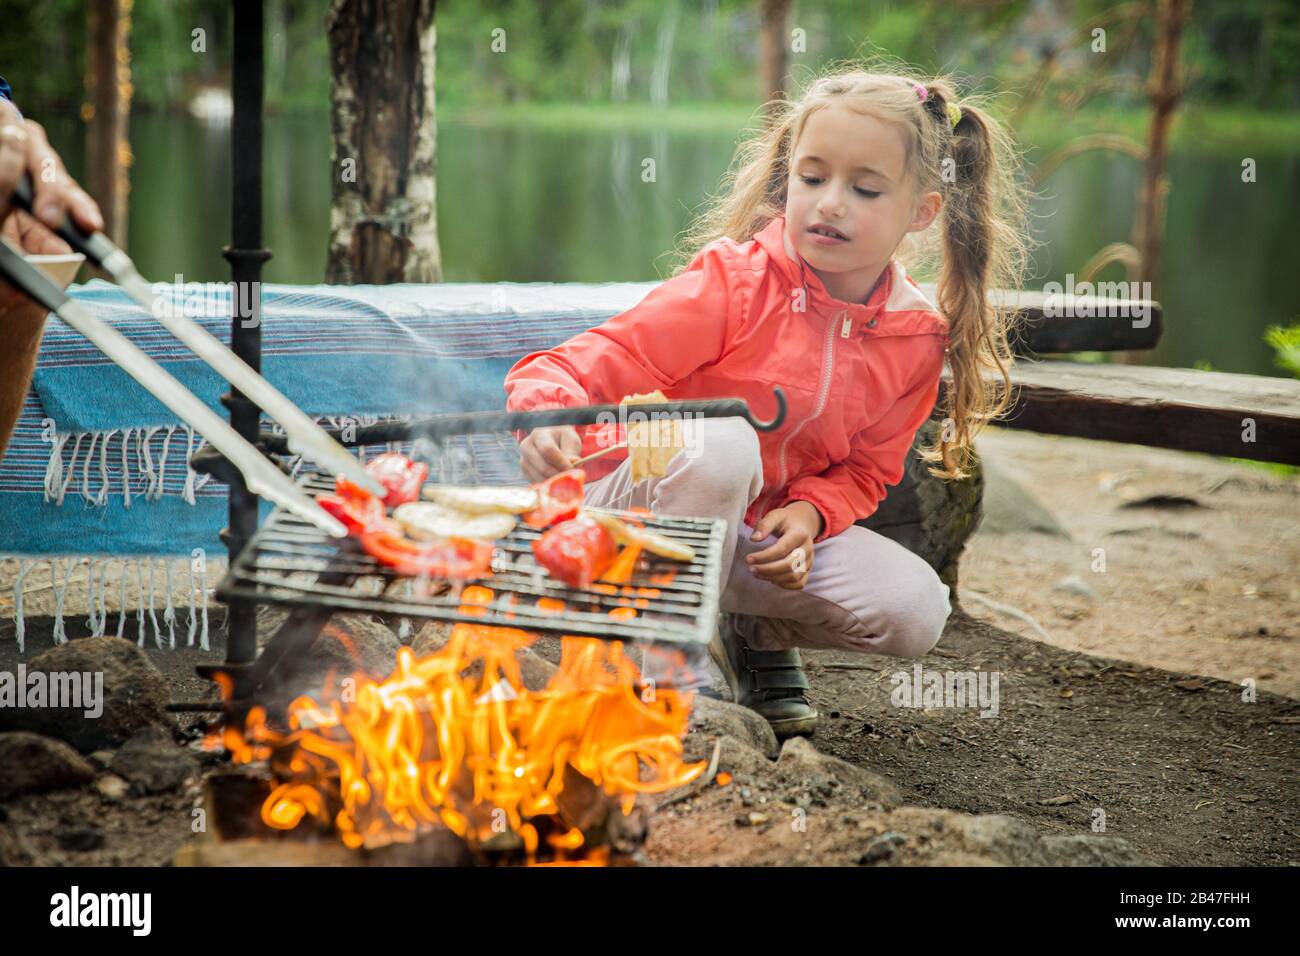 L'homme et sa petite fille ont barbecue dans la forêt sur la rive rocheuse du lac, faisant un feu, griller du pain, des légumes et des guimauves. Bonne Famille Banque D'Images